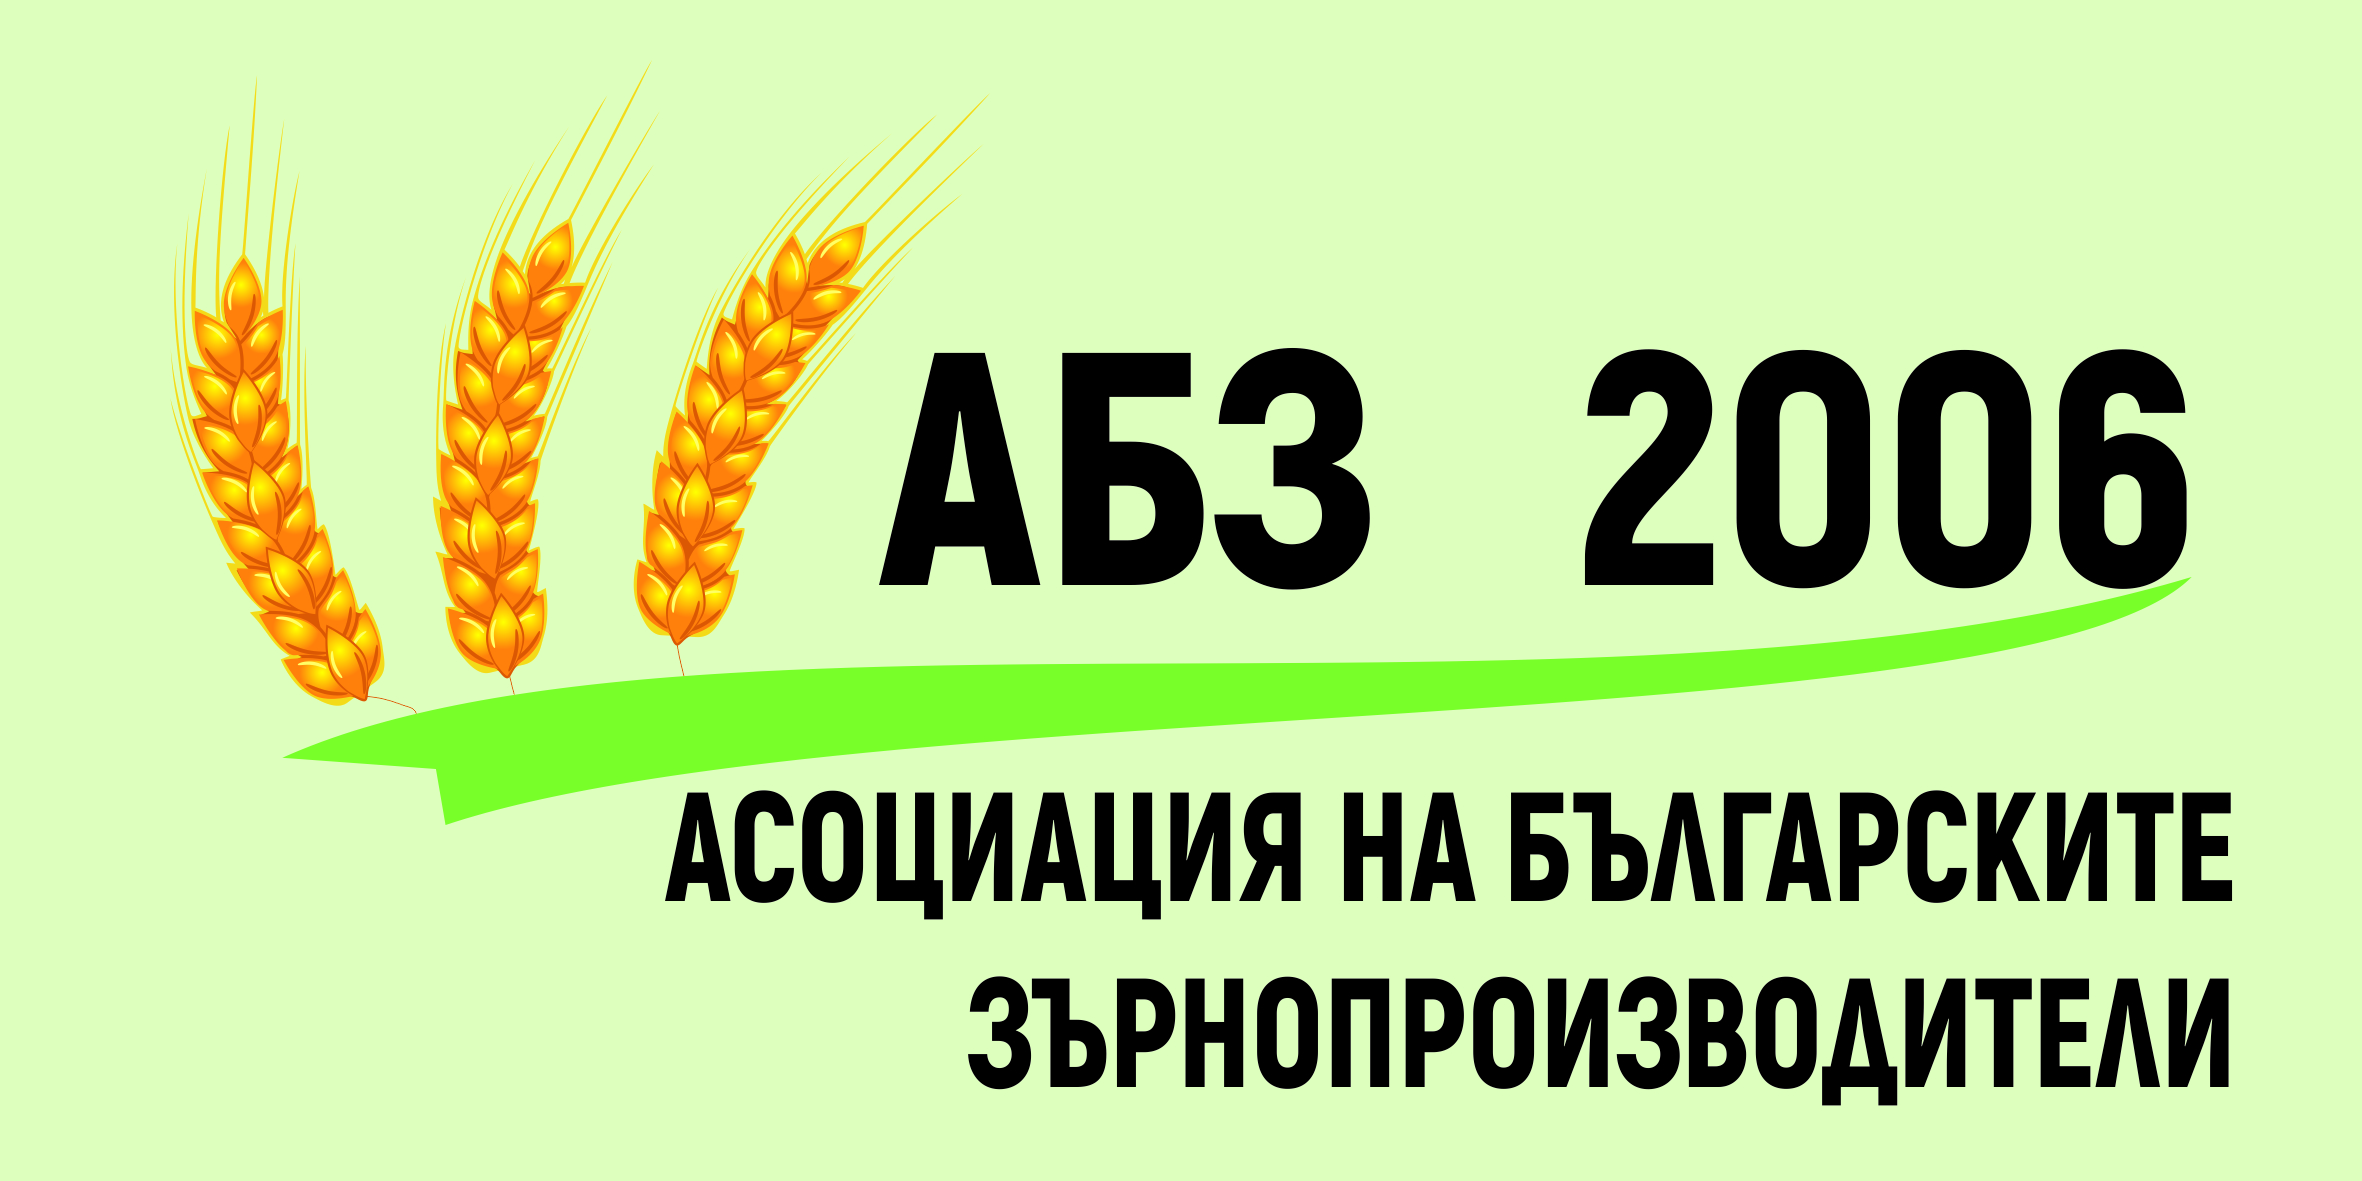 Ако не се изпълни договореното: Националната асоциация на зърнопроизводителите (НАЗ) заявява готовност за нови протестни действия